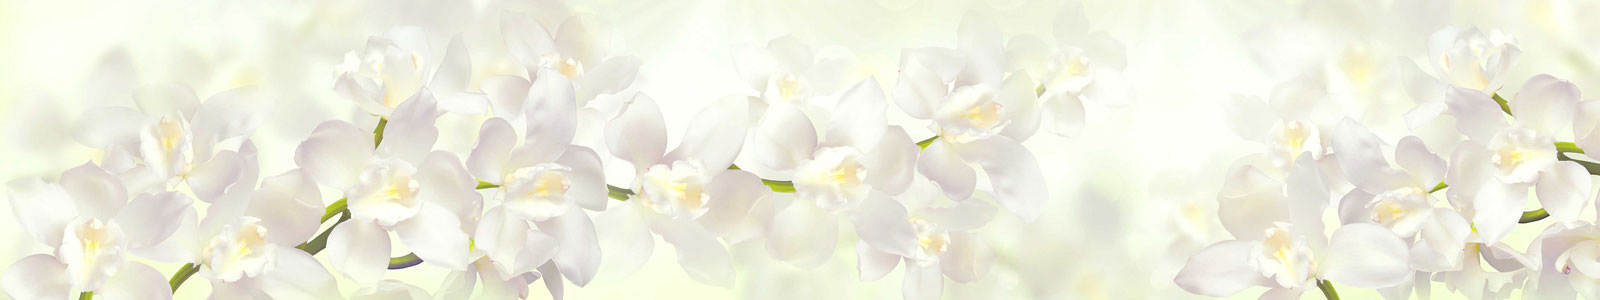 №5694 - Нежные белые орхидея на весеннем фоне